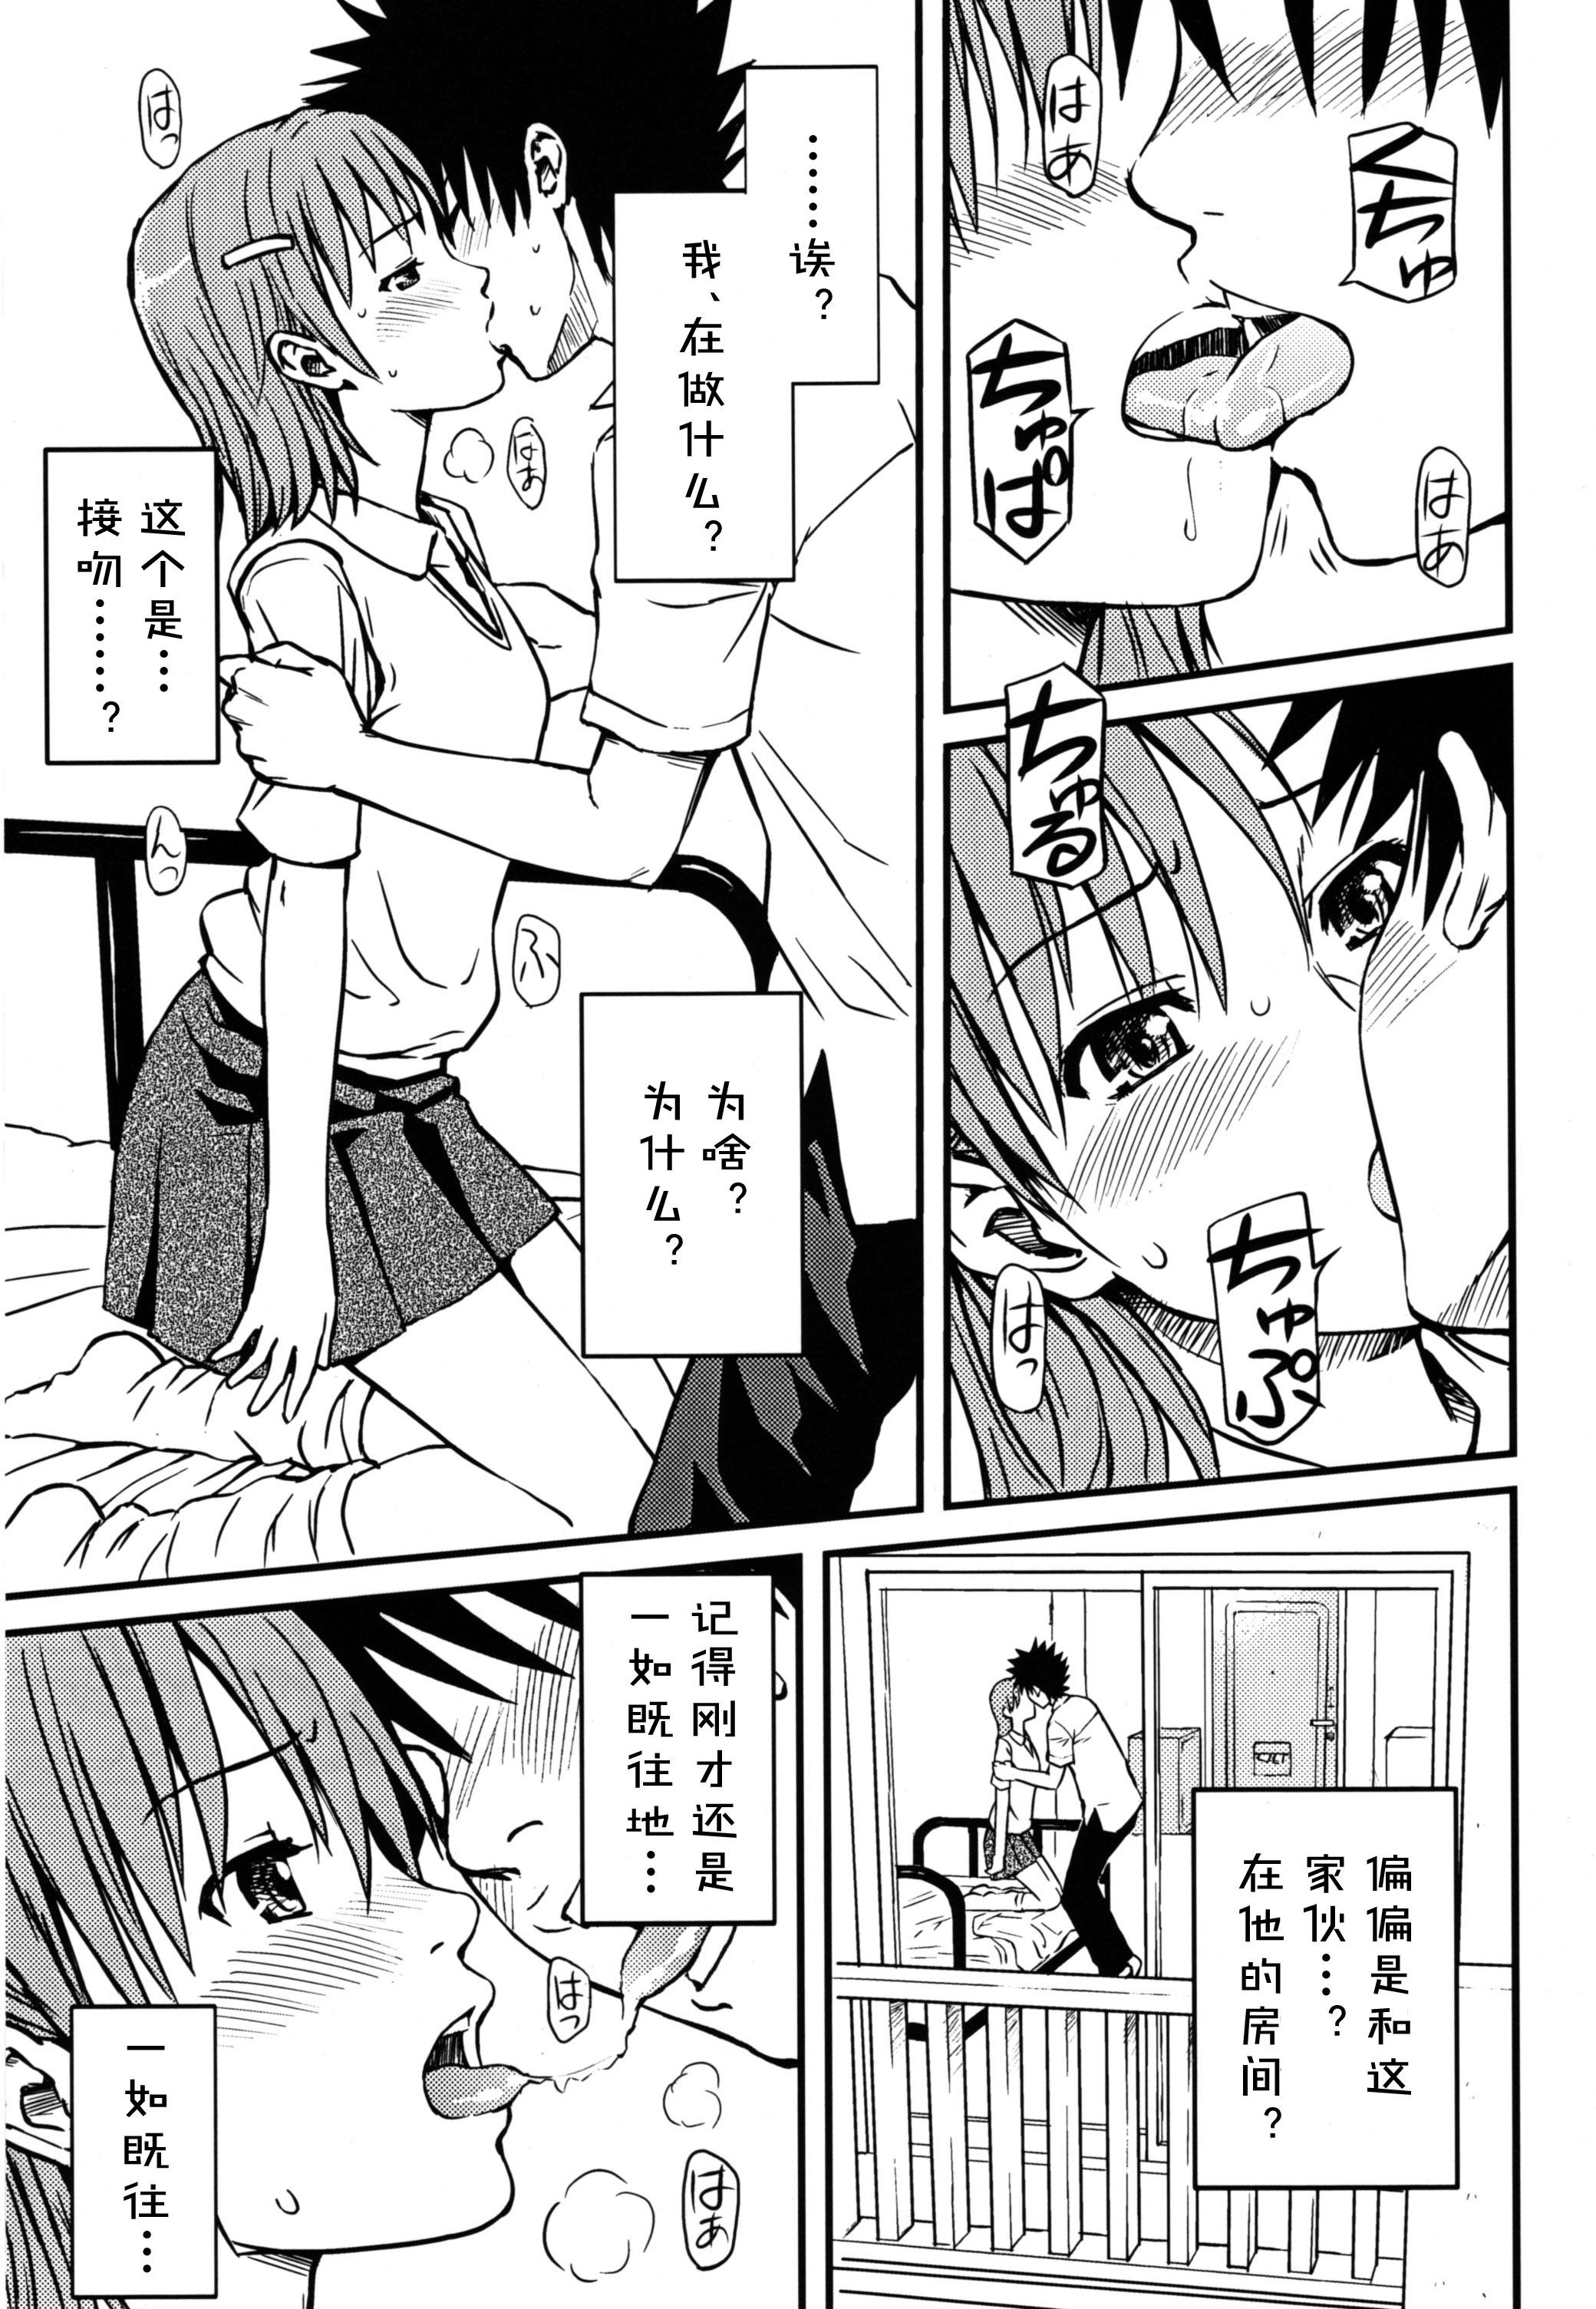 Muscle Toaru H no Railgun - Toaru kagaku no railgun Rubdown - Page 3